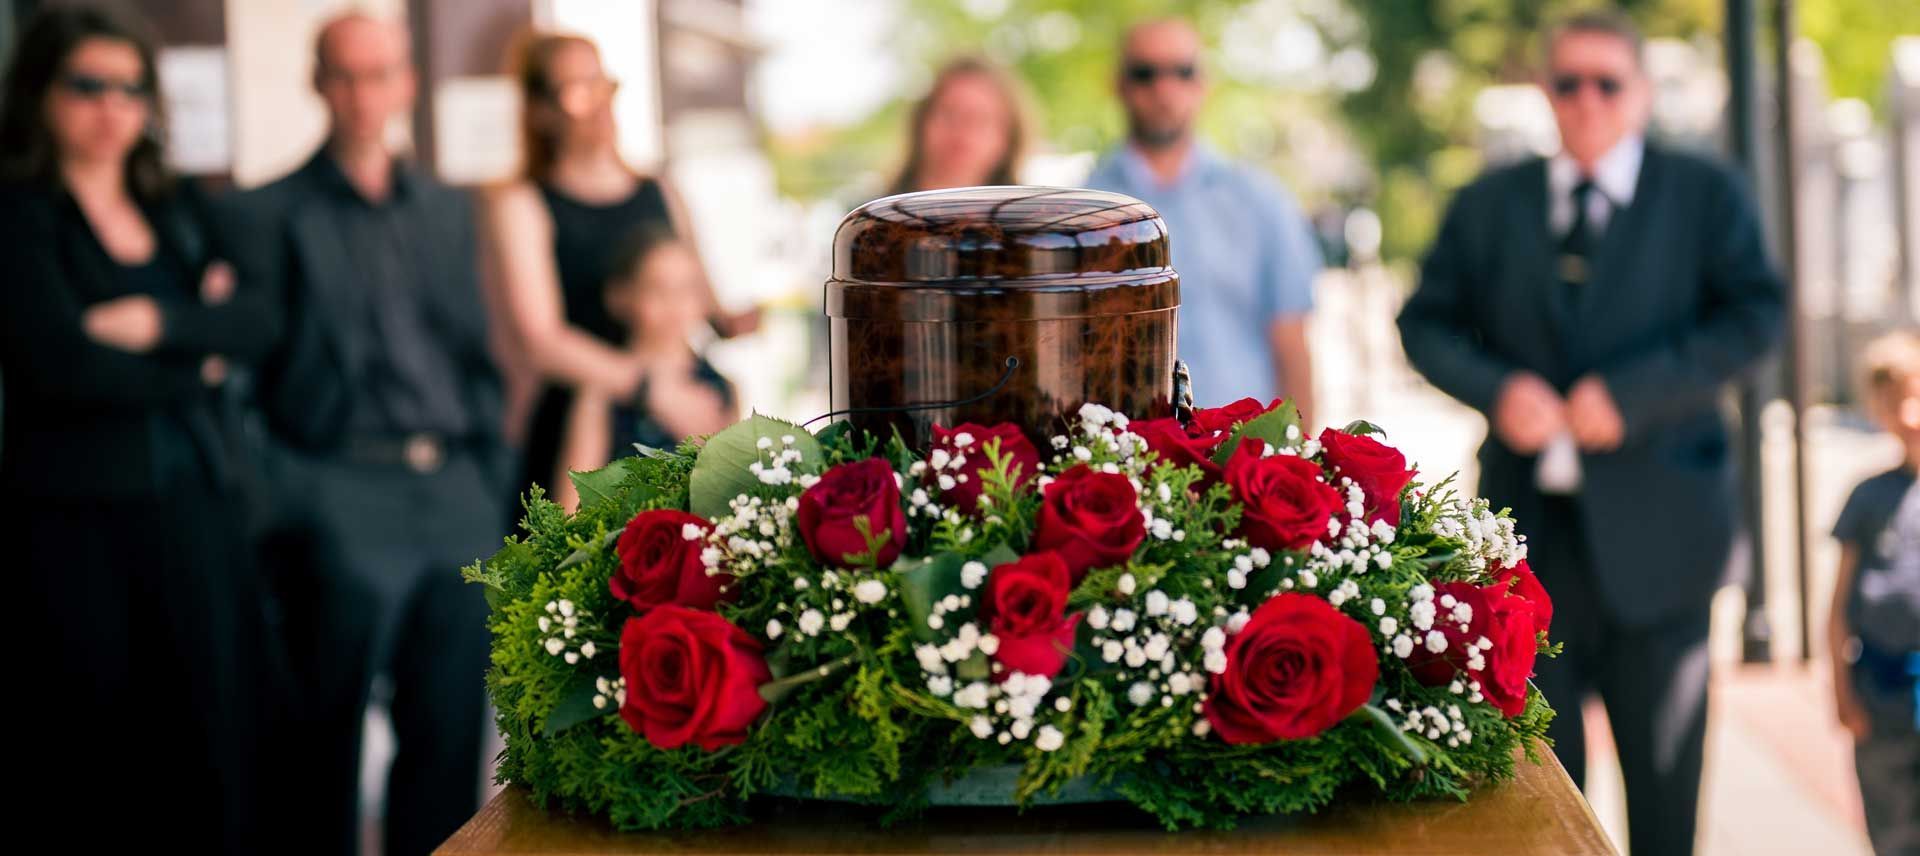 Une urne entourée de fleurs en fond une famille